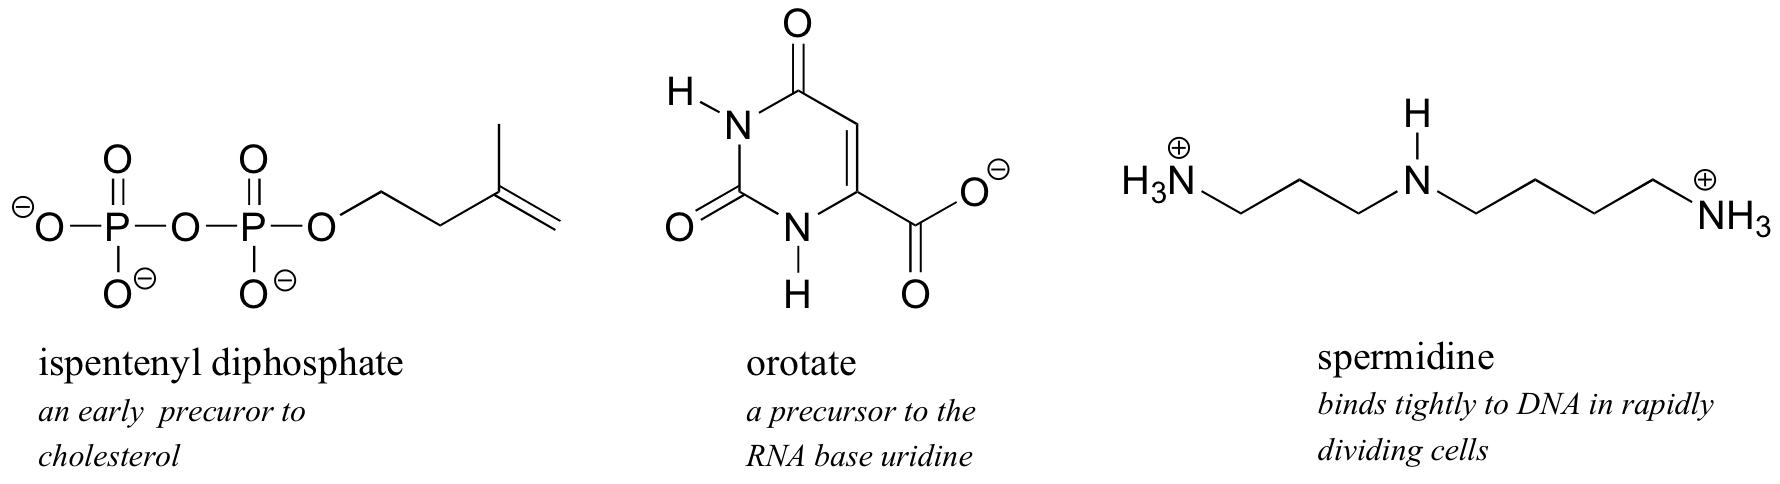 Dibujos de líneas de enlace de difosfato de ispentenilo, un precursor temprano del colesterol, orotato un precursor de la base de ARN uridina y espermidina que se une fuertemente al ADN en células que se dividen rápidamente.